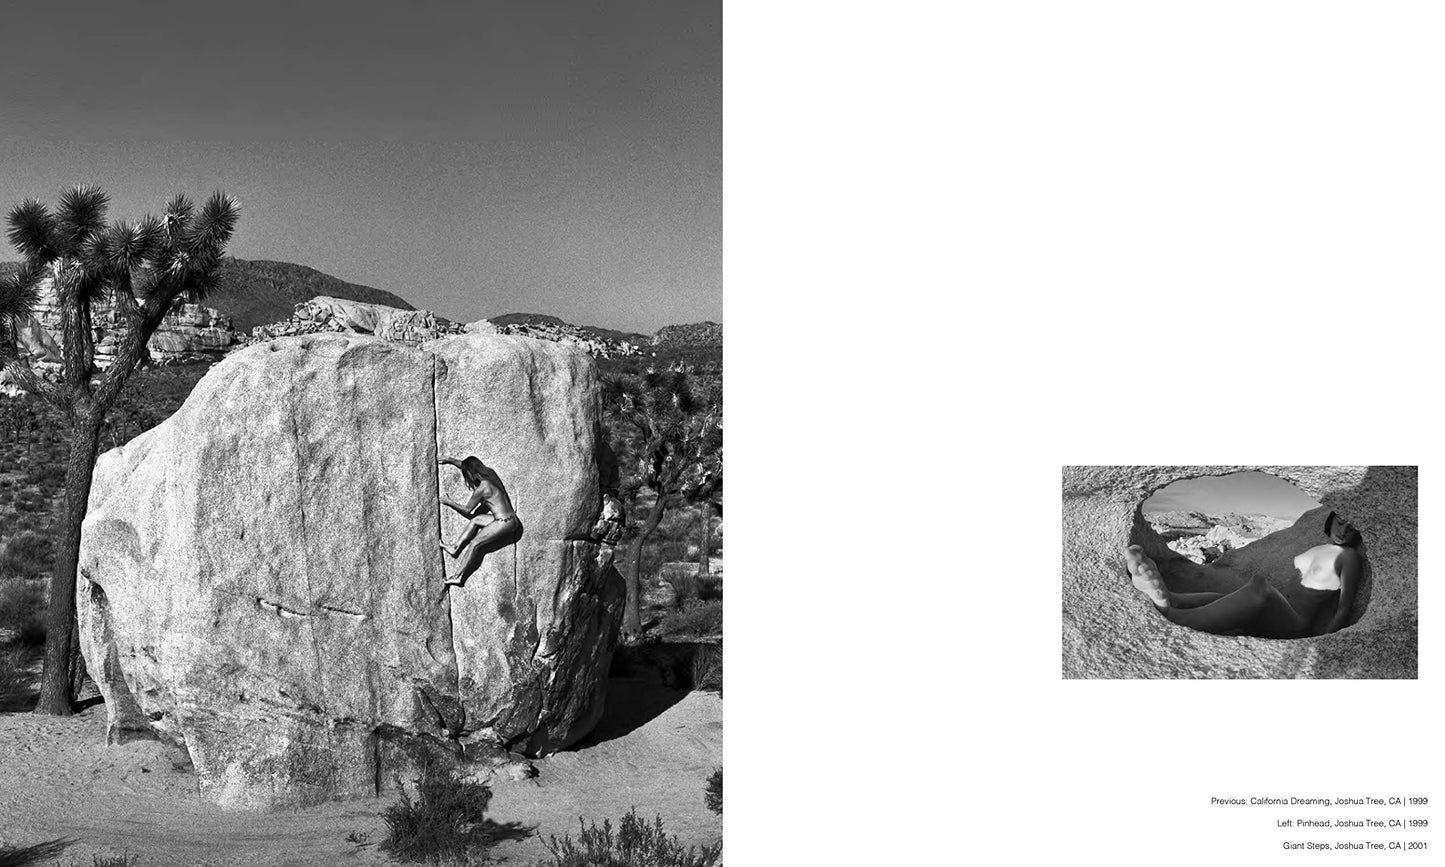 Stone Nudes: Climbing Bare - Dean Fidelman